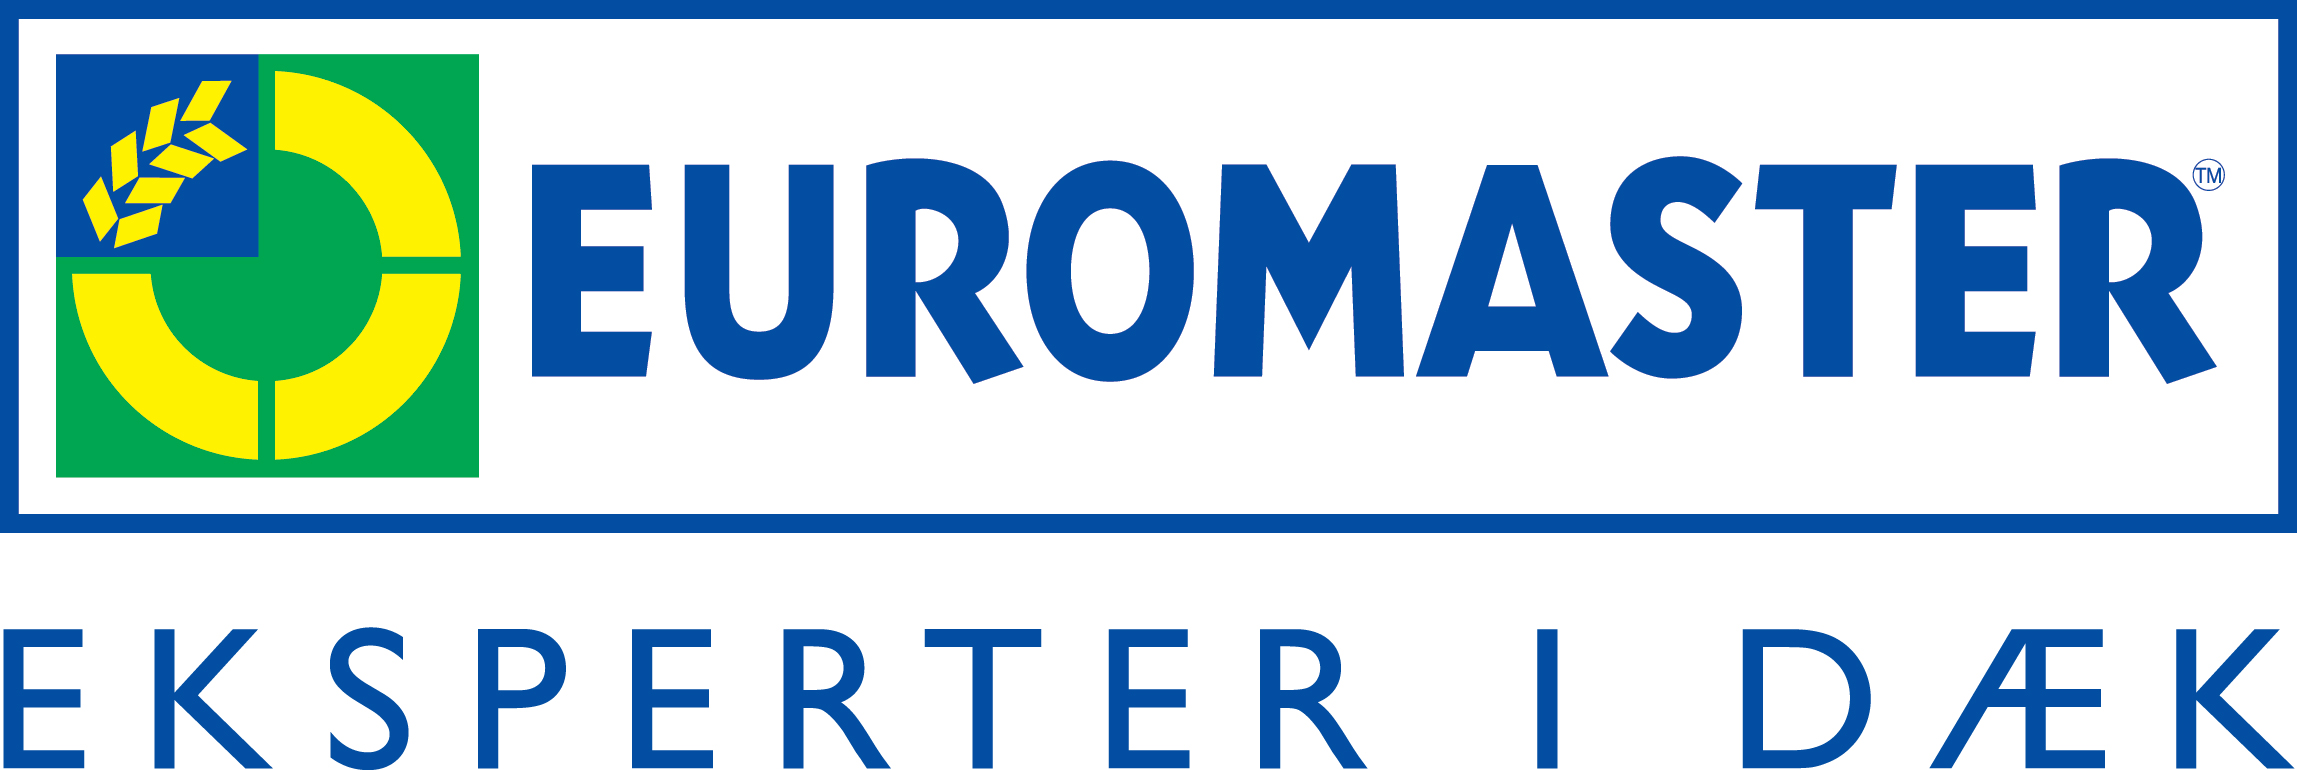 Euromaster København gammel logo